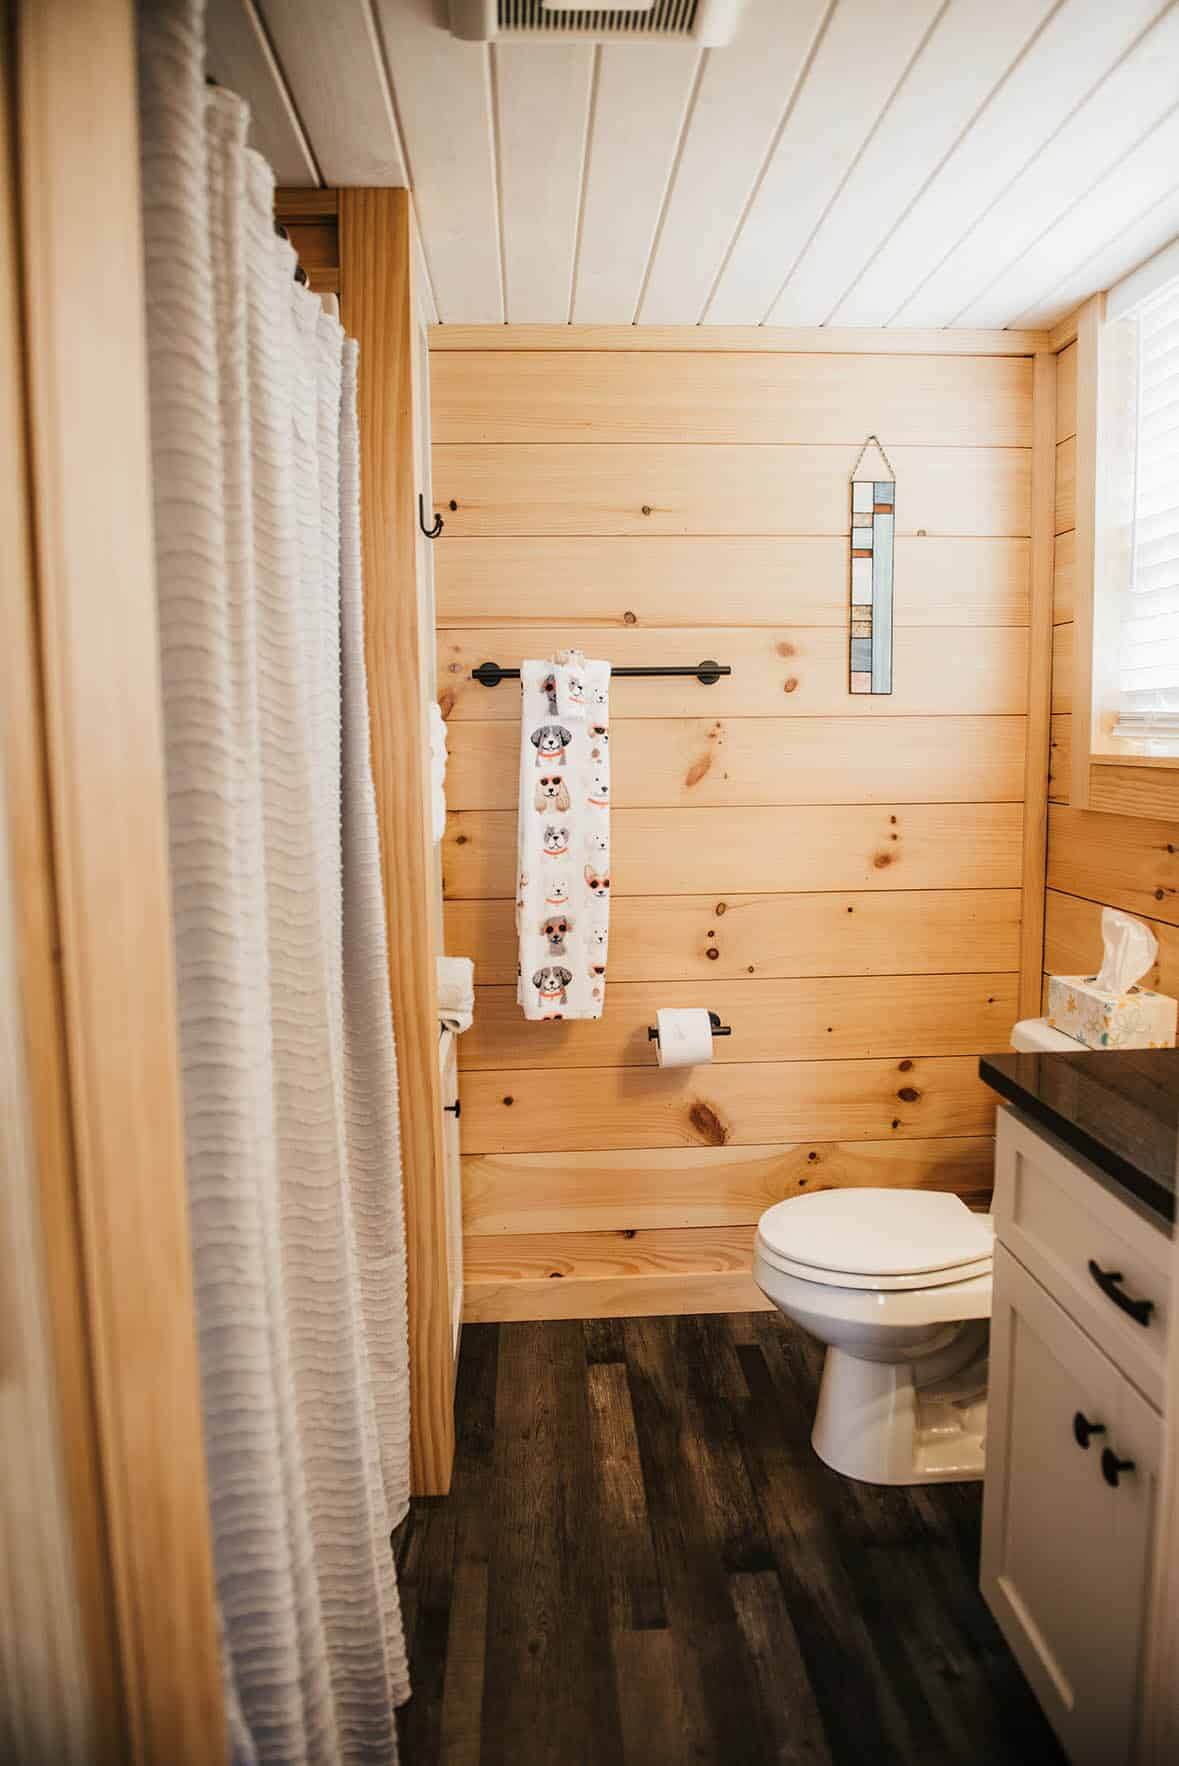 fh-prefab-tiny-home-log-cabin-bathroom-2002